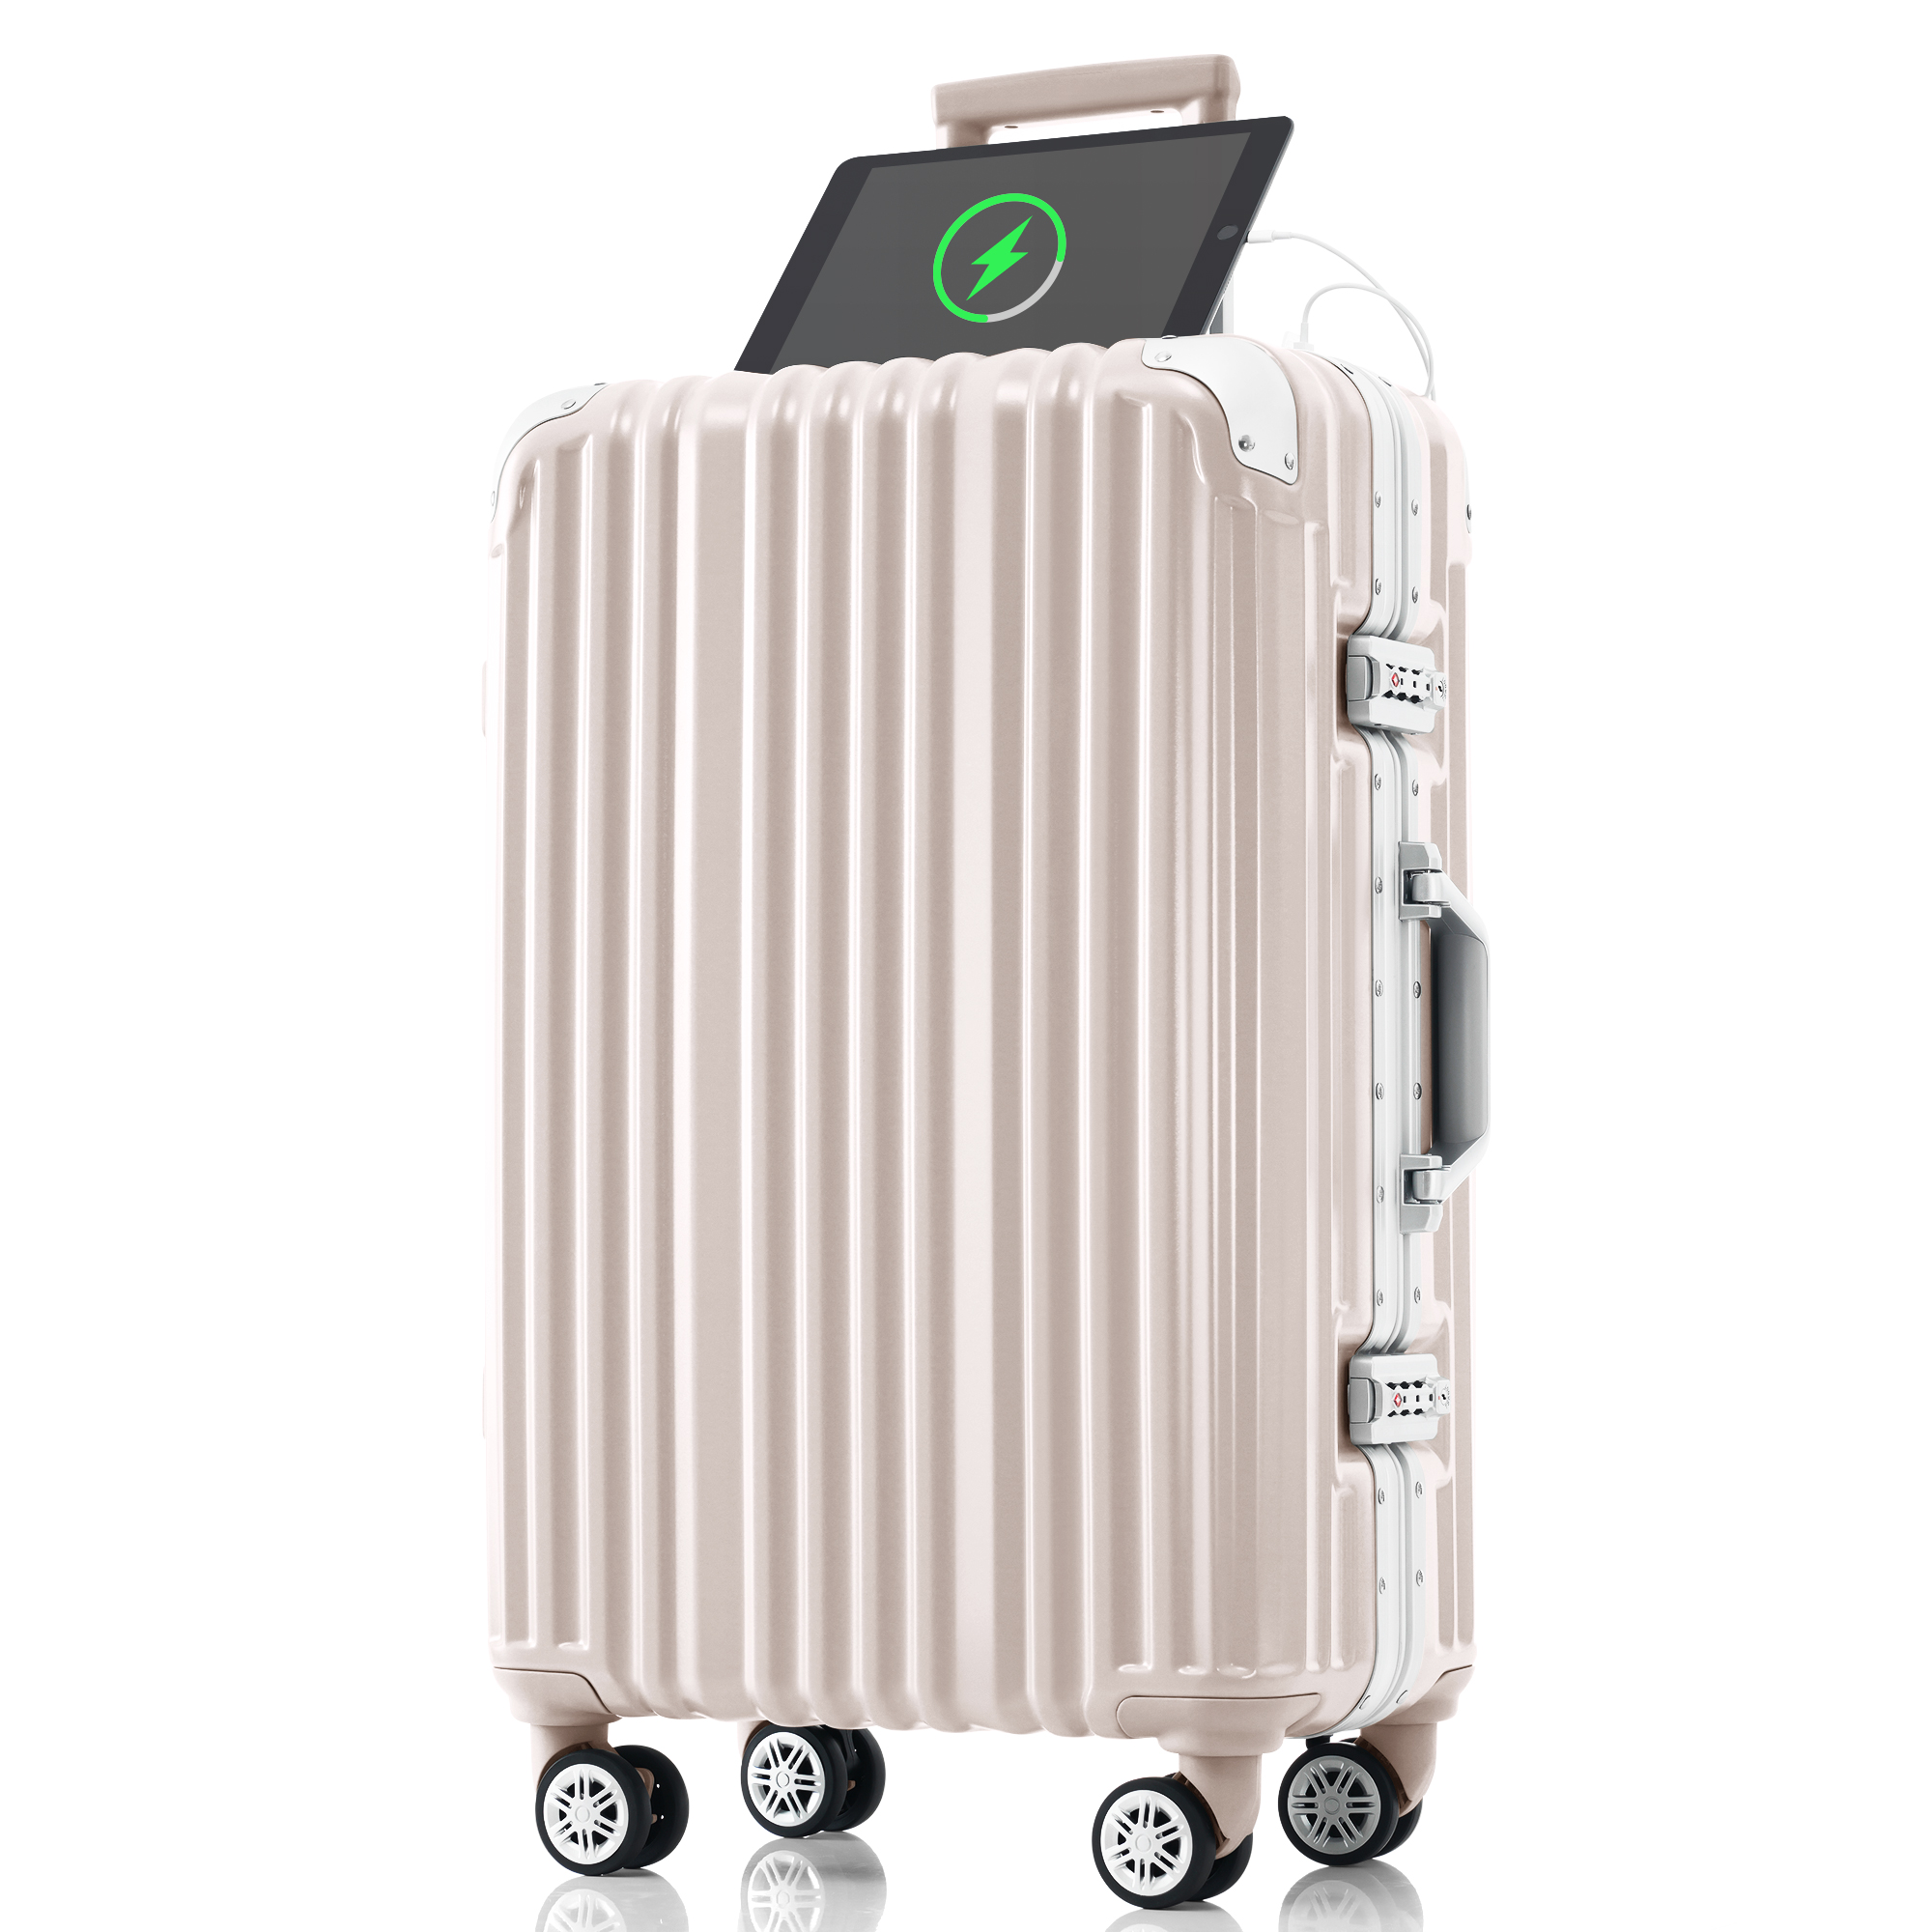 スーツケース Lサイズ 軽量 アルミフレーム キャリーバッグ ストッパー付き キャリーケース USBポート付き 7泊〜10泊用 大型 TSAロック  TANOBI T1169 suitcase